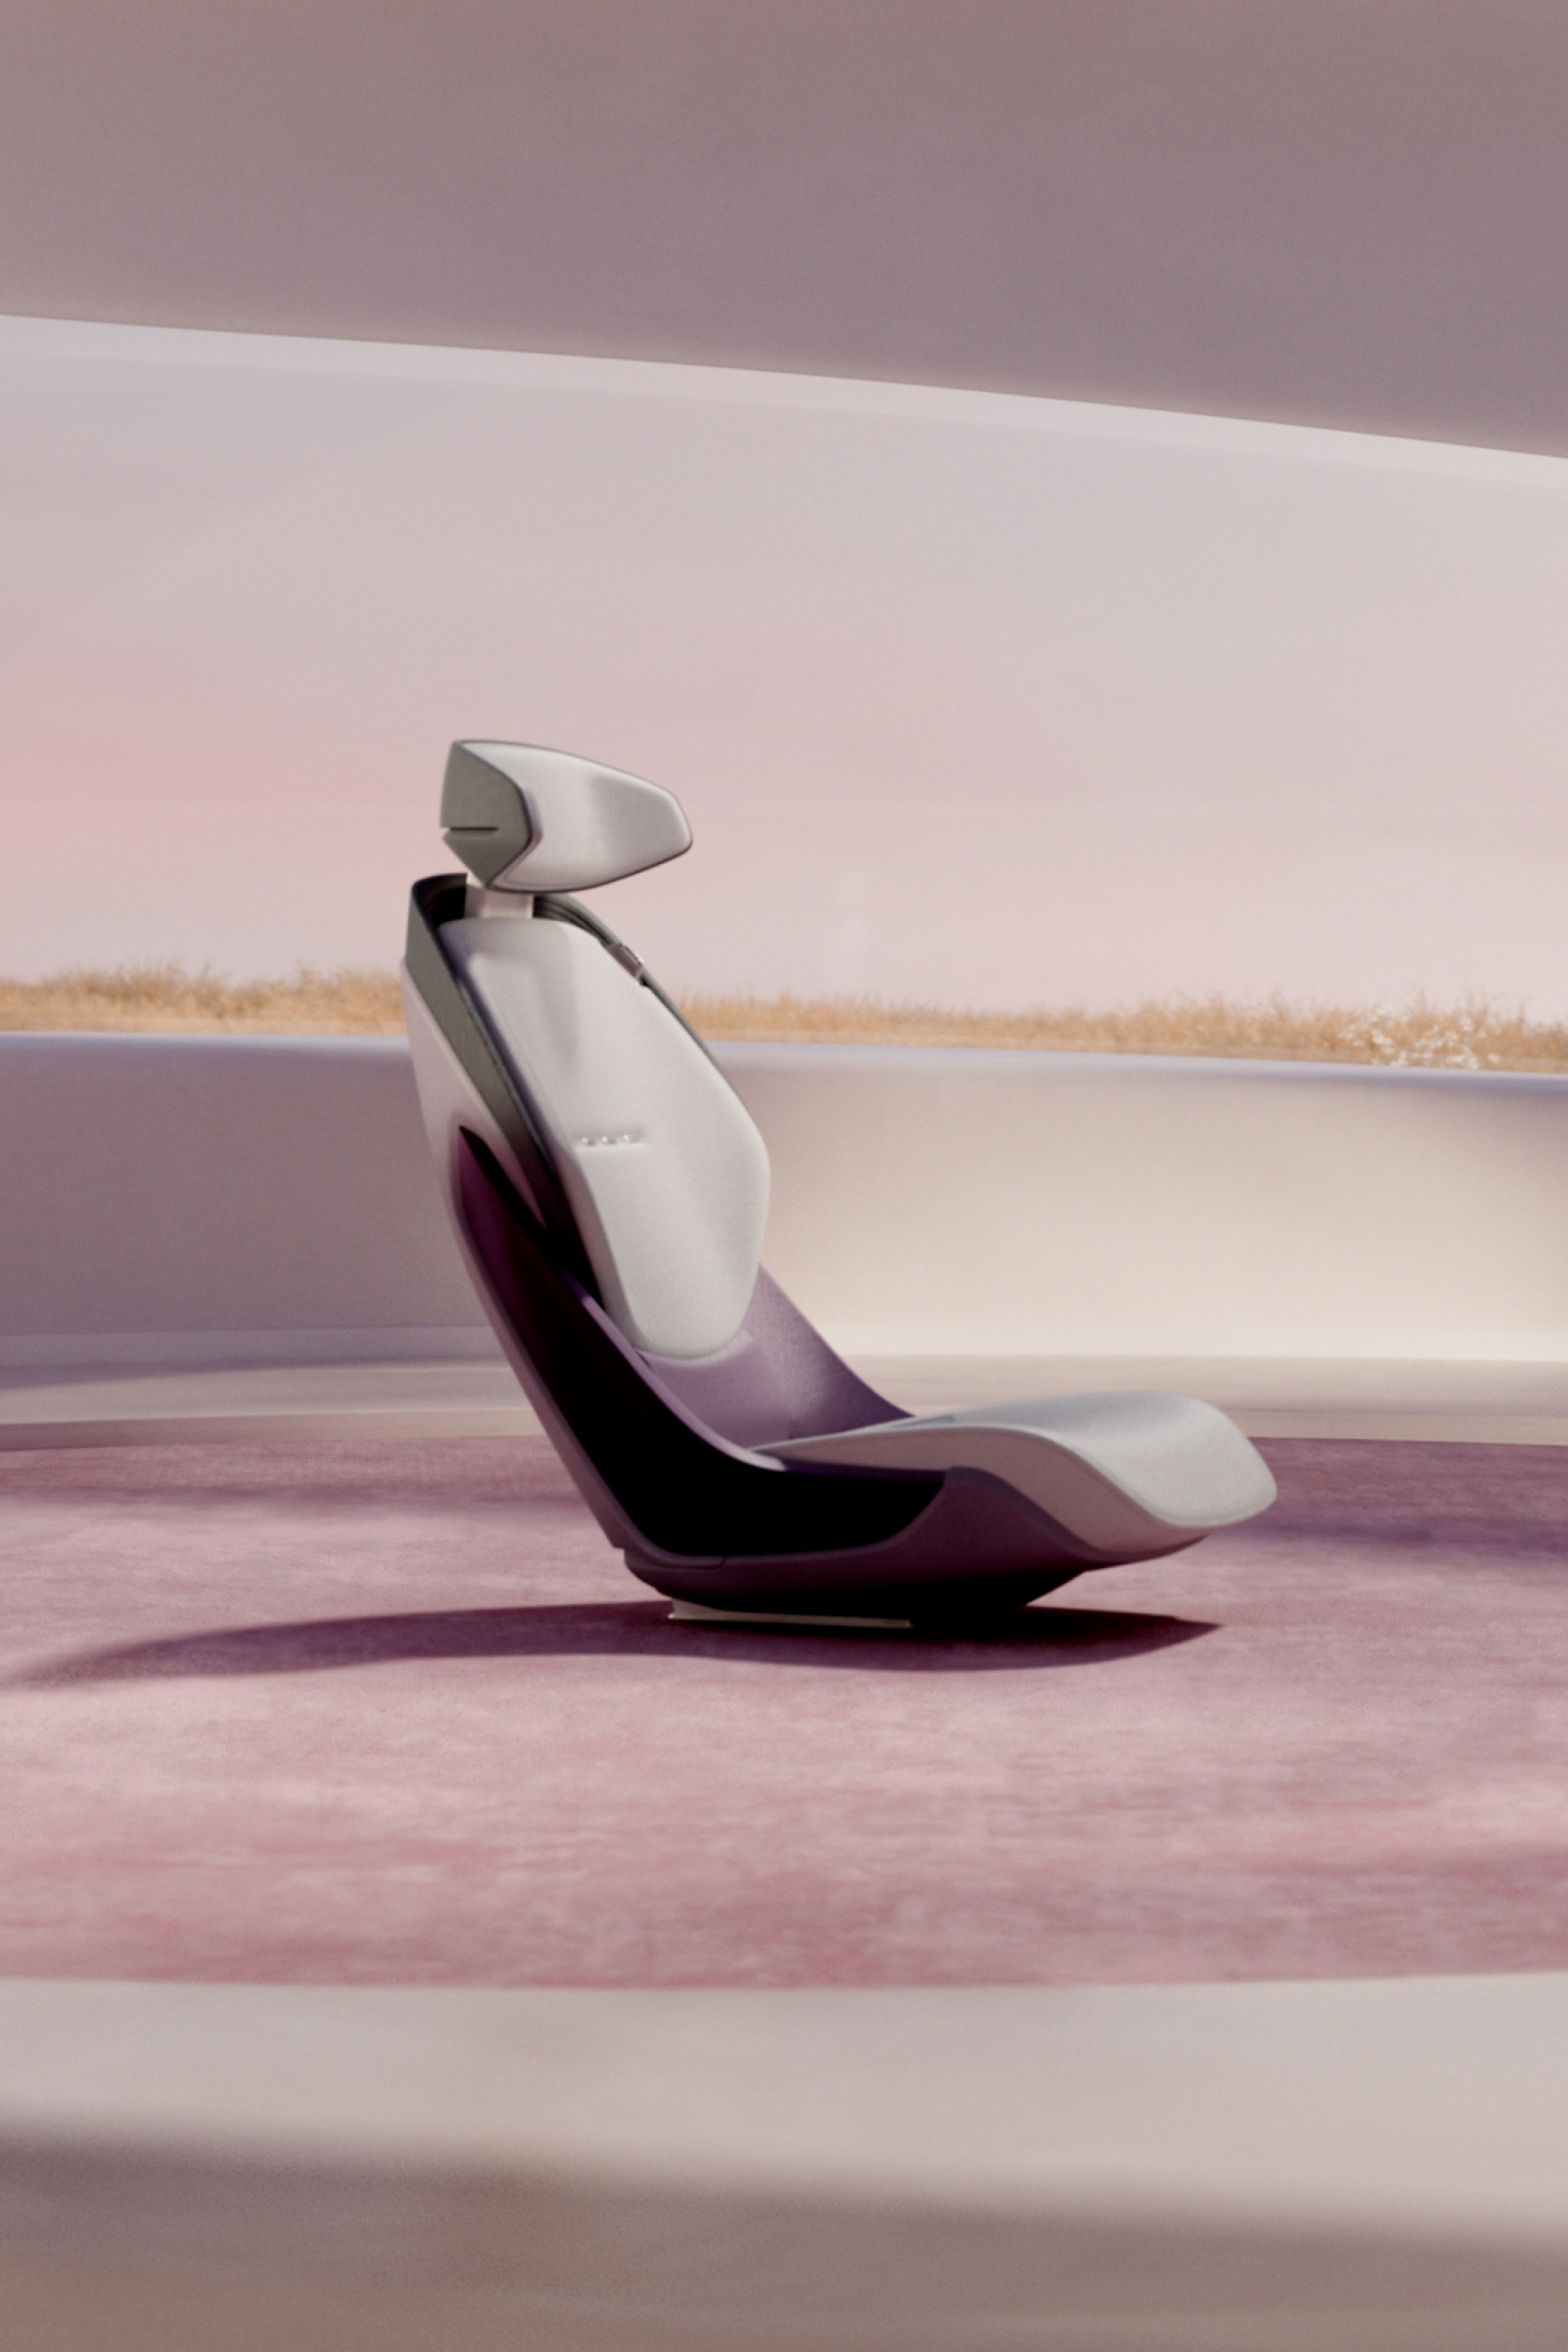 Een stoel uit de Audi grandsphere concept in een positie rechtop.